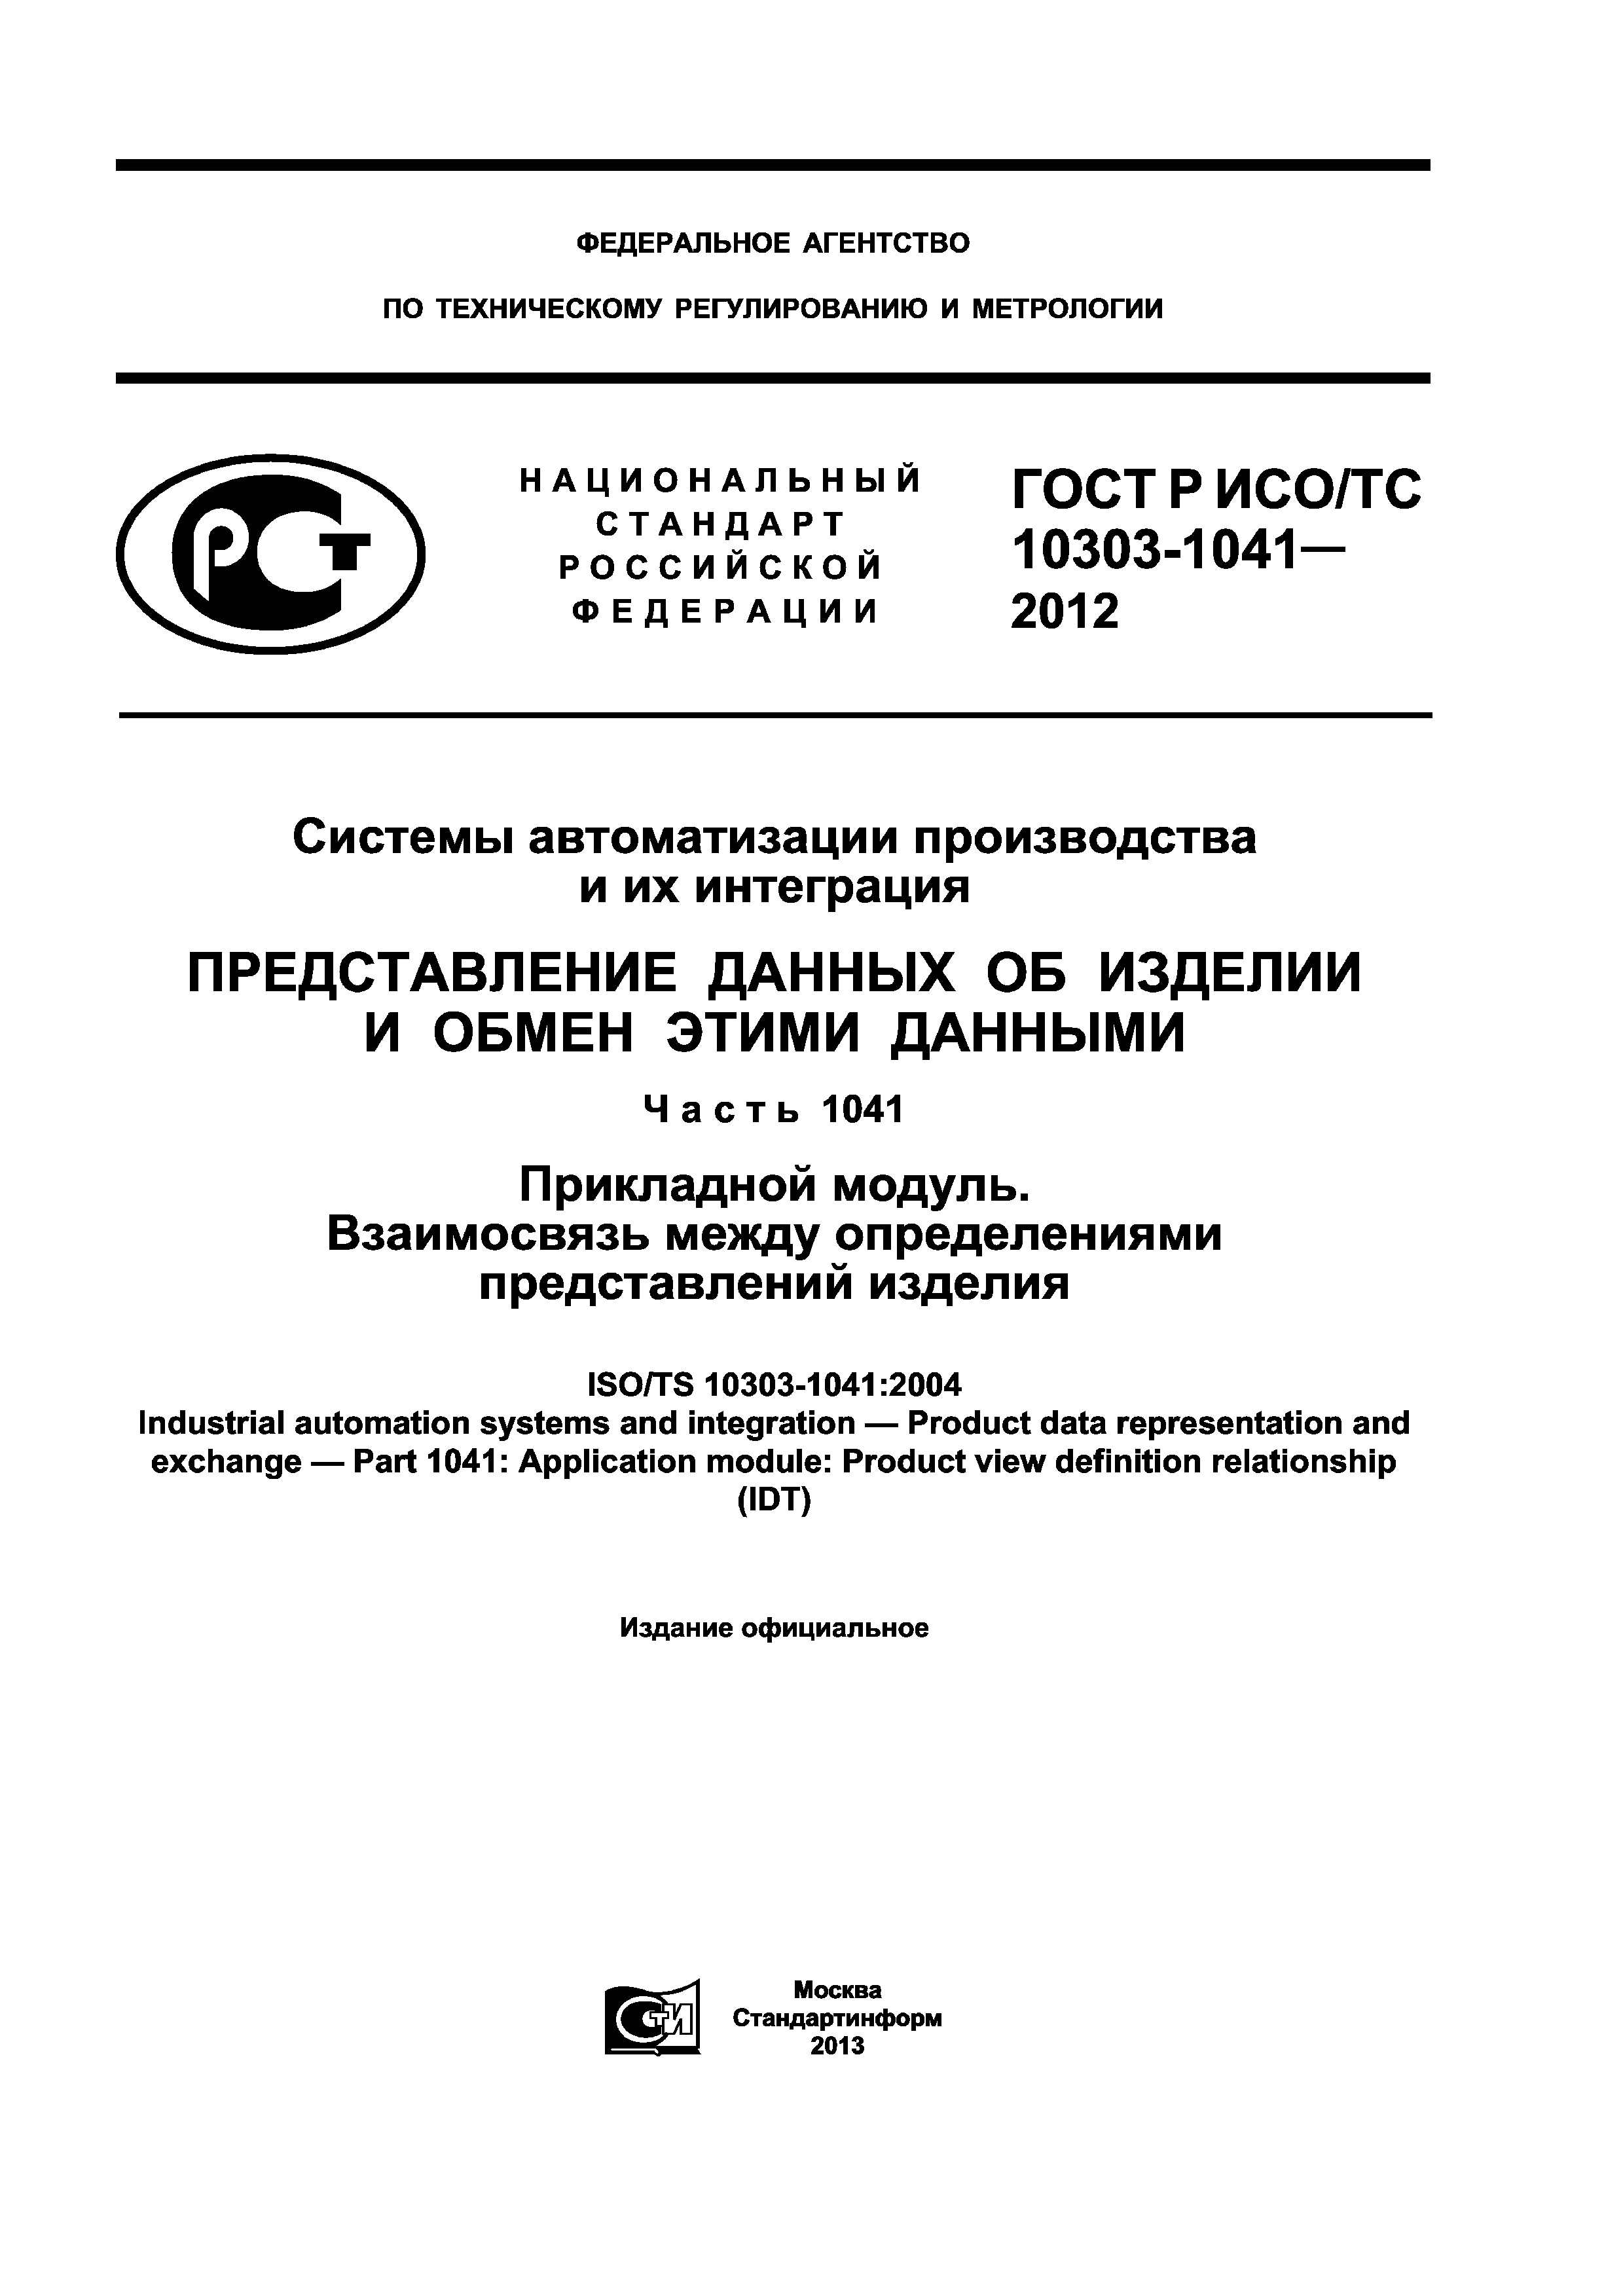 ГОСТ Р ИСО/ТС 10303-1041-2012